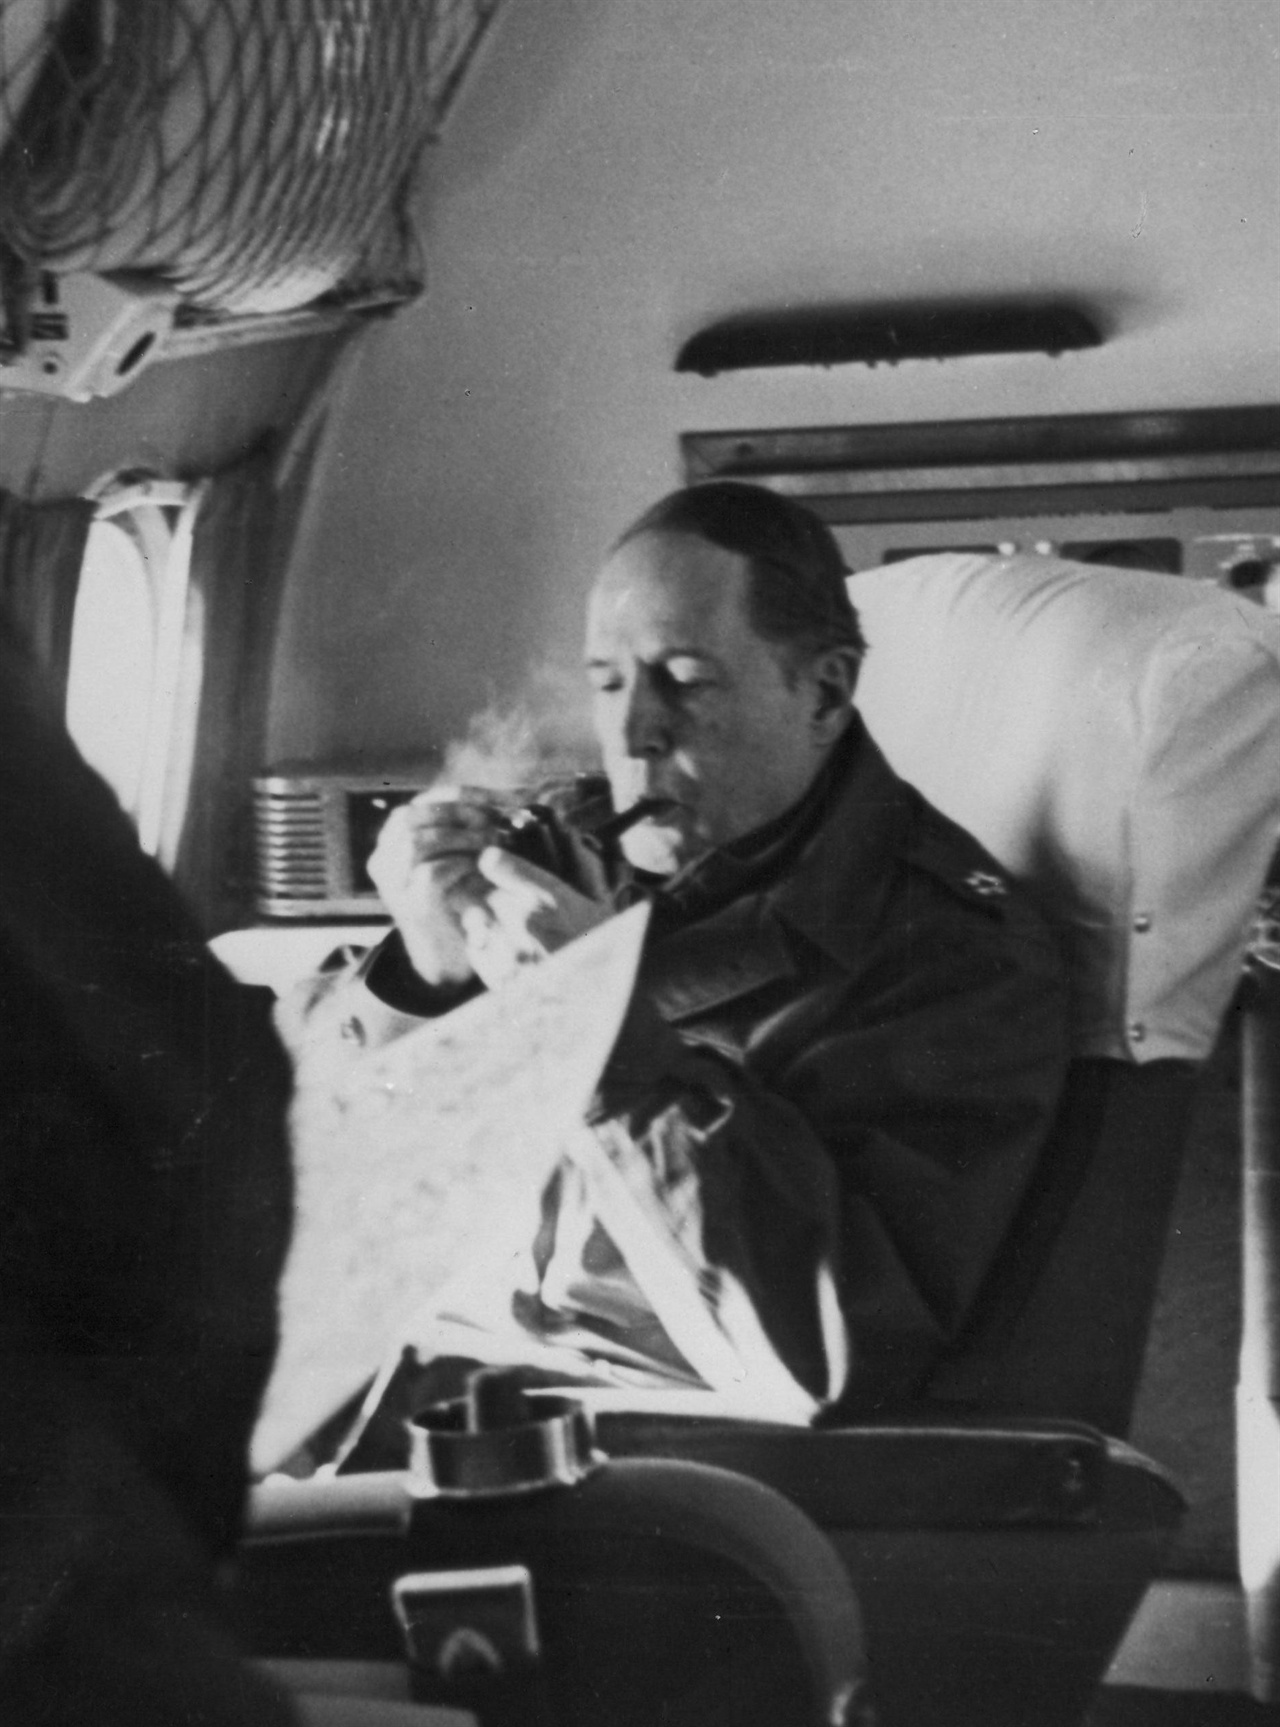 1950. 11. 24. 신의주 상공 비행기 안에서 파이프를 문 채 지도를 펴 보며 작전 구상을 하는 맥아더 장군.